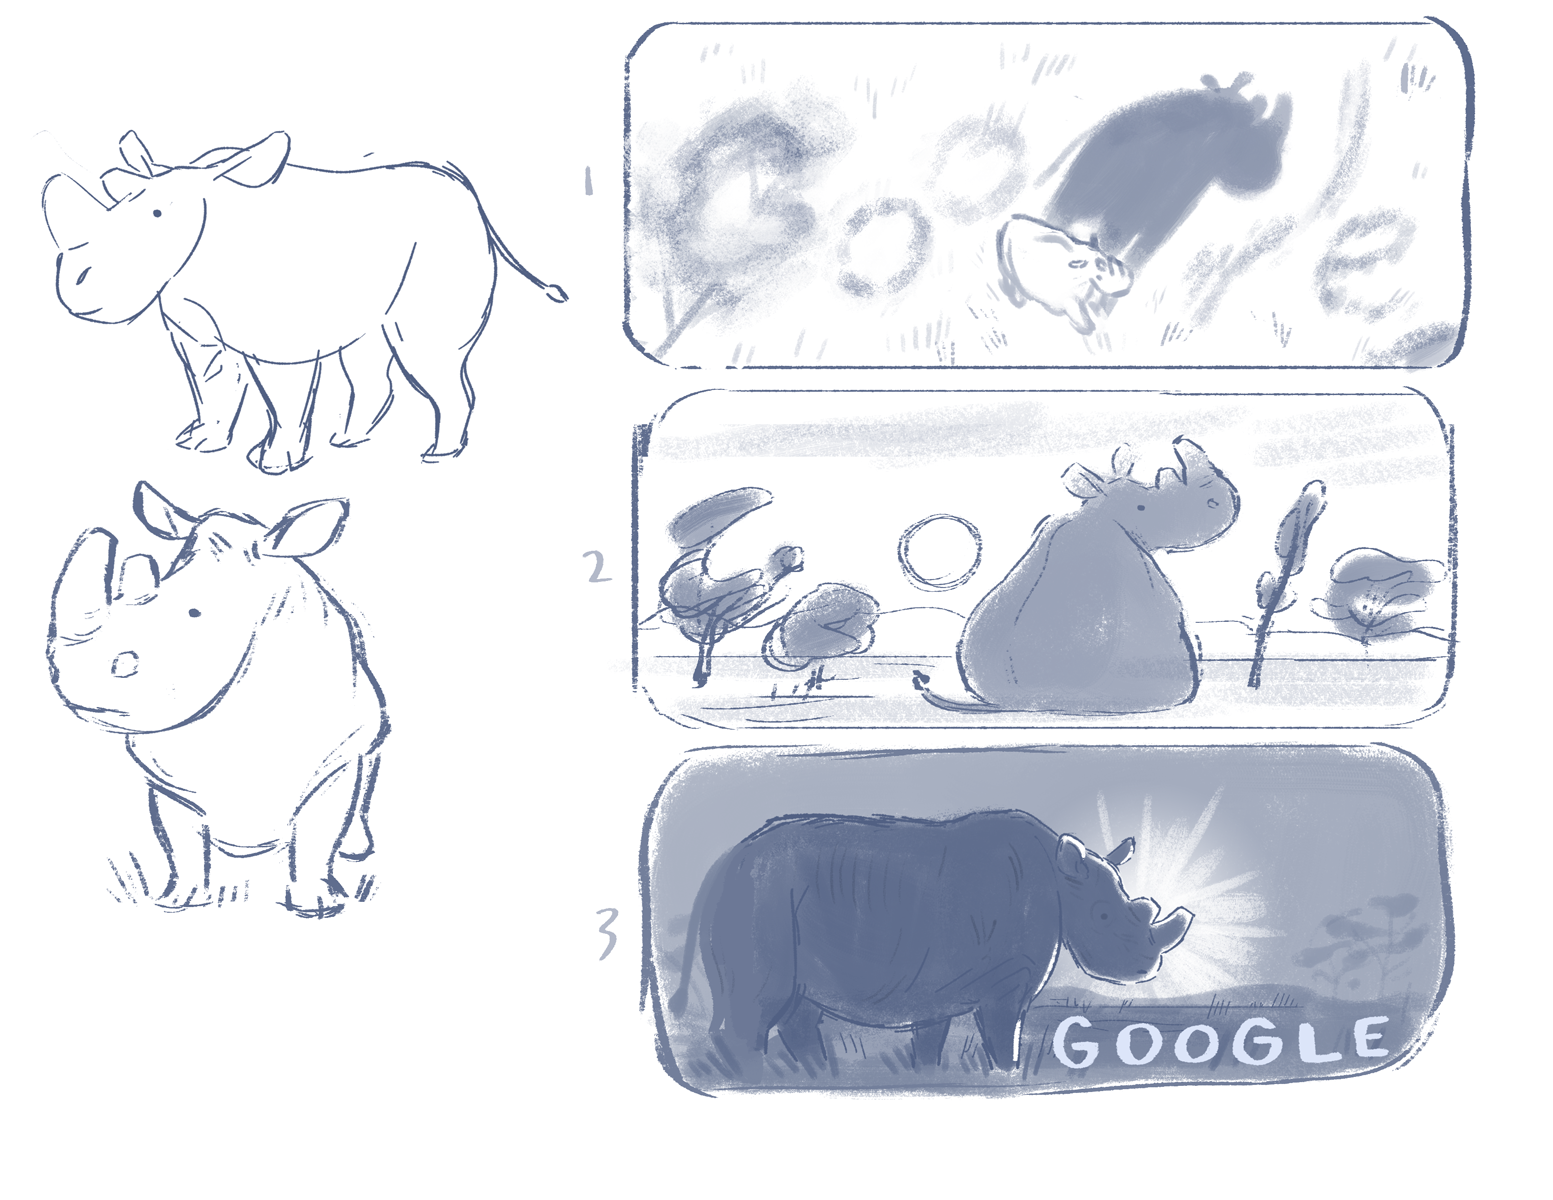 Primeros conceptos y bocetos del doodle de Sophie Diao. (Foto: Google)

